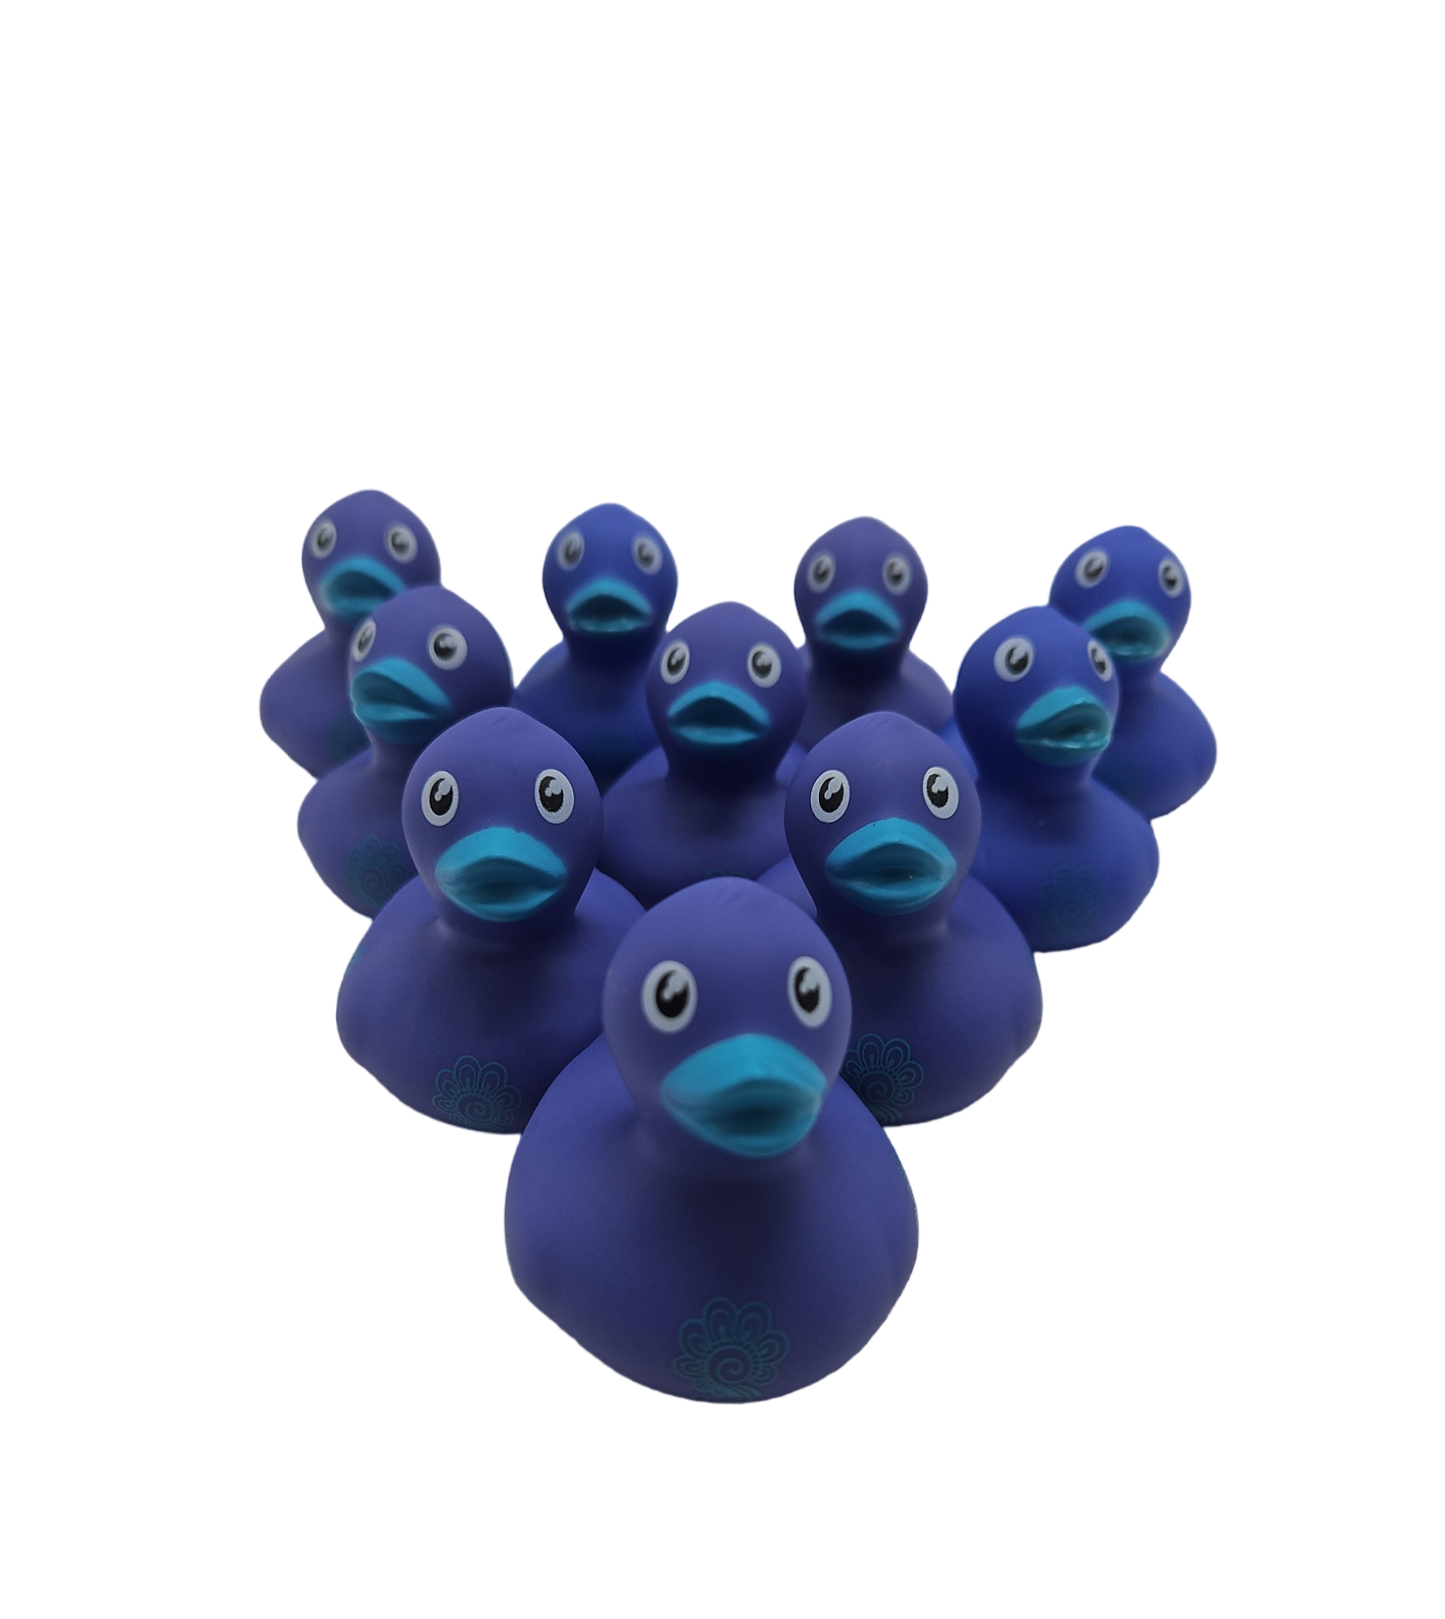 10 Blue Flower Ducks - 2" Rubber Ducks